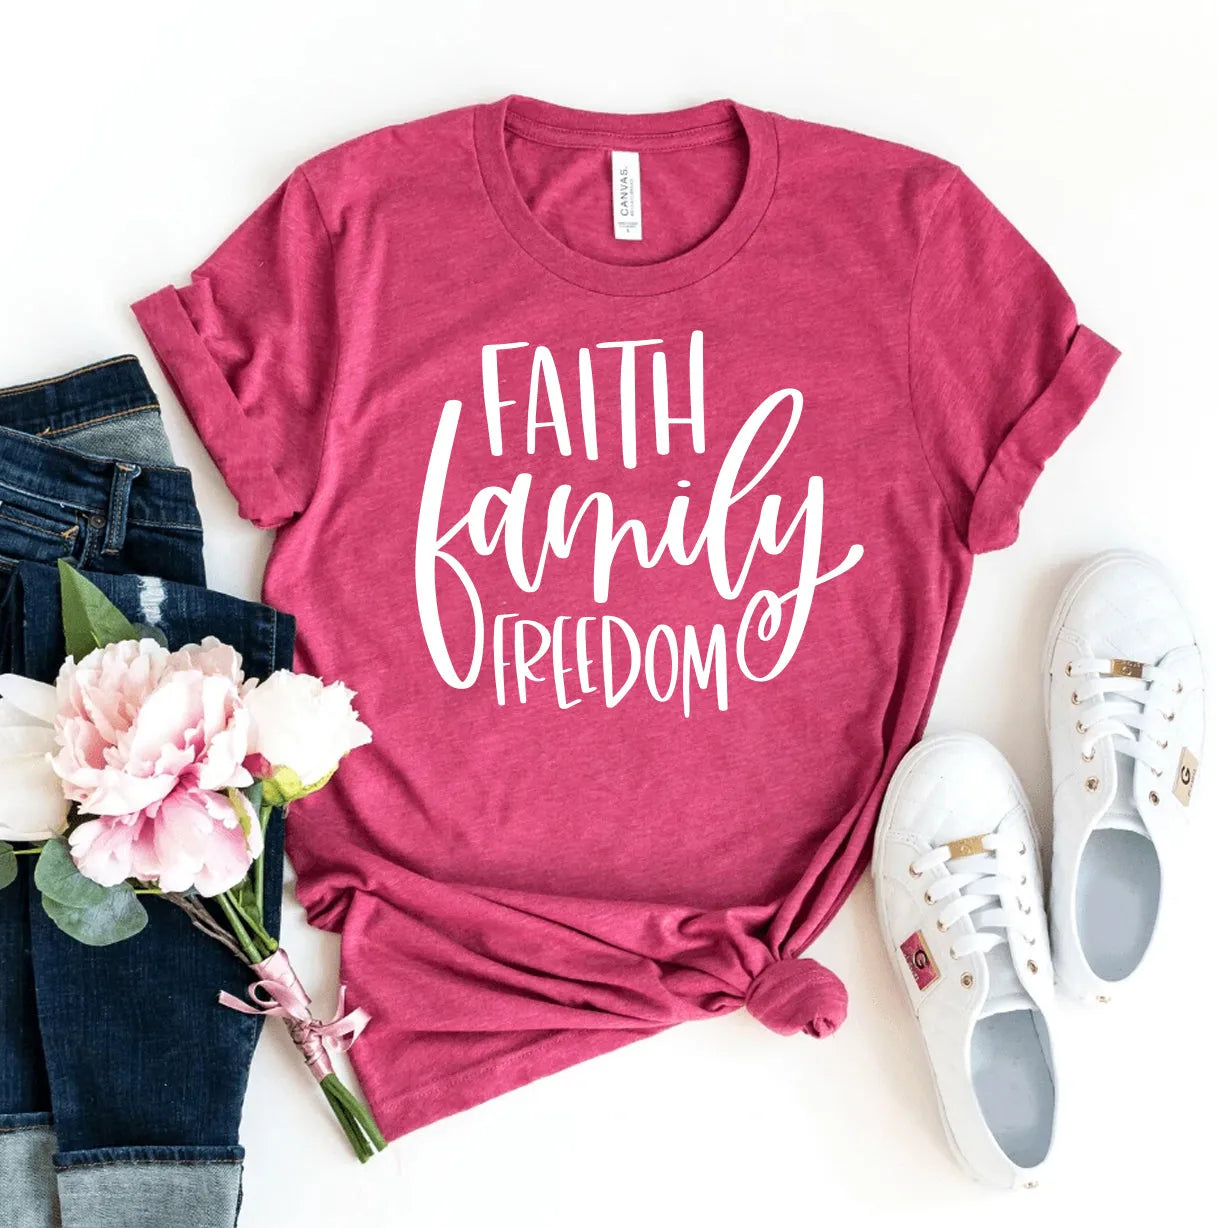 Faith Family Freedom T-shirt